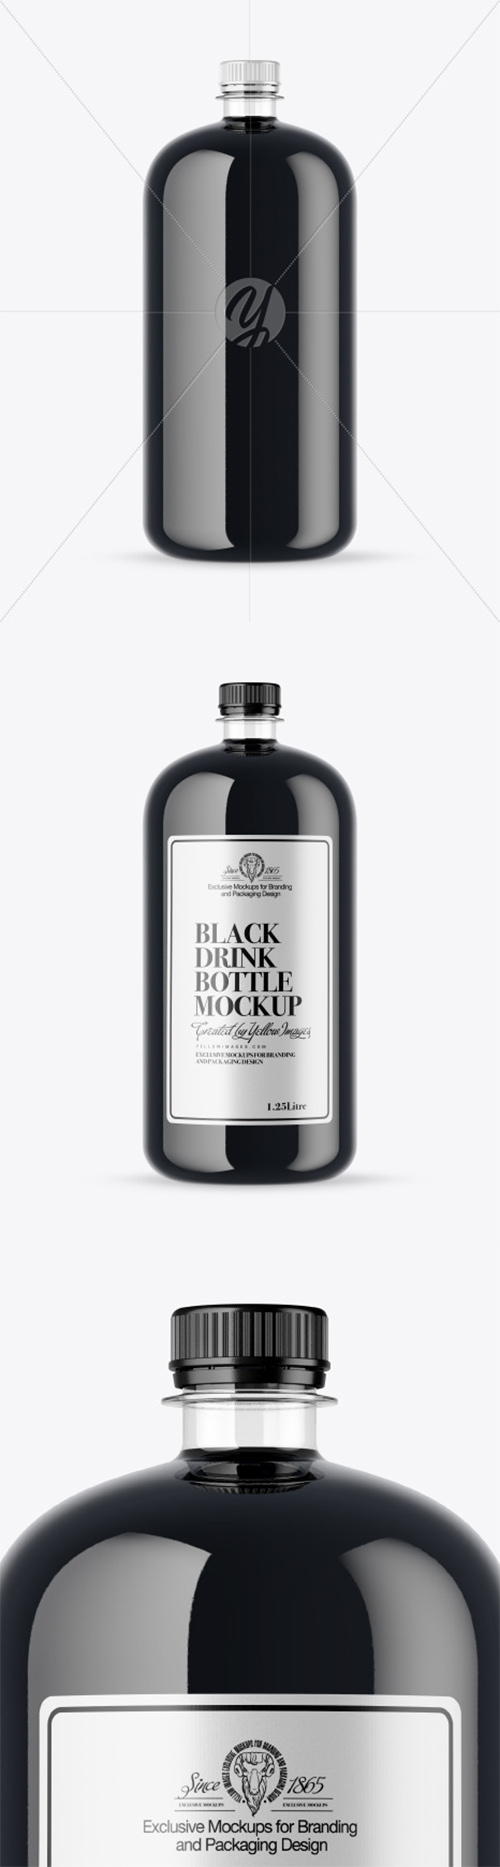 Plastic Bottle With Black Drink Mockup 51989 TIF